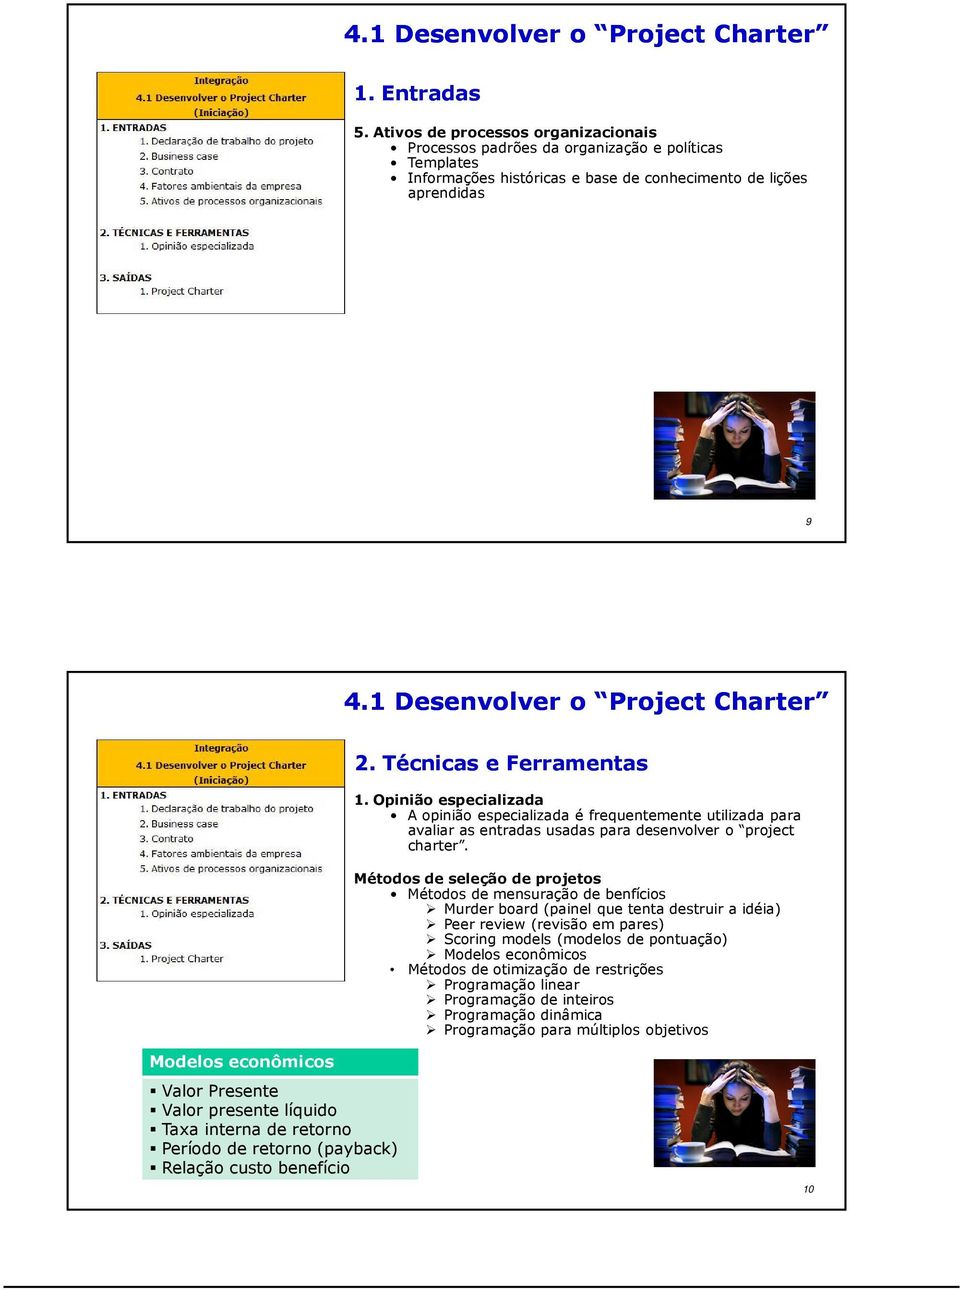 Técnicas e Ferramentas 1. Opinião especializada A opinião especializada é frequentemente utilizada para avaliar as entradas usadas para desenvolver o project charter.